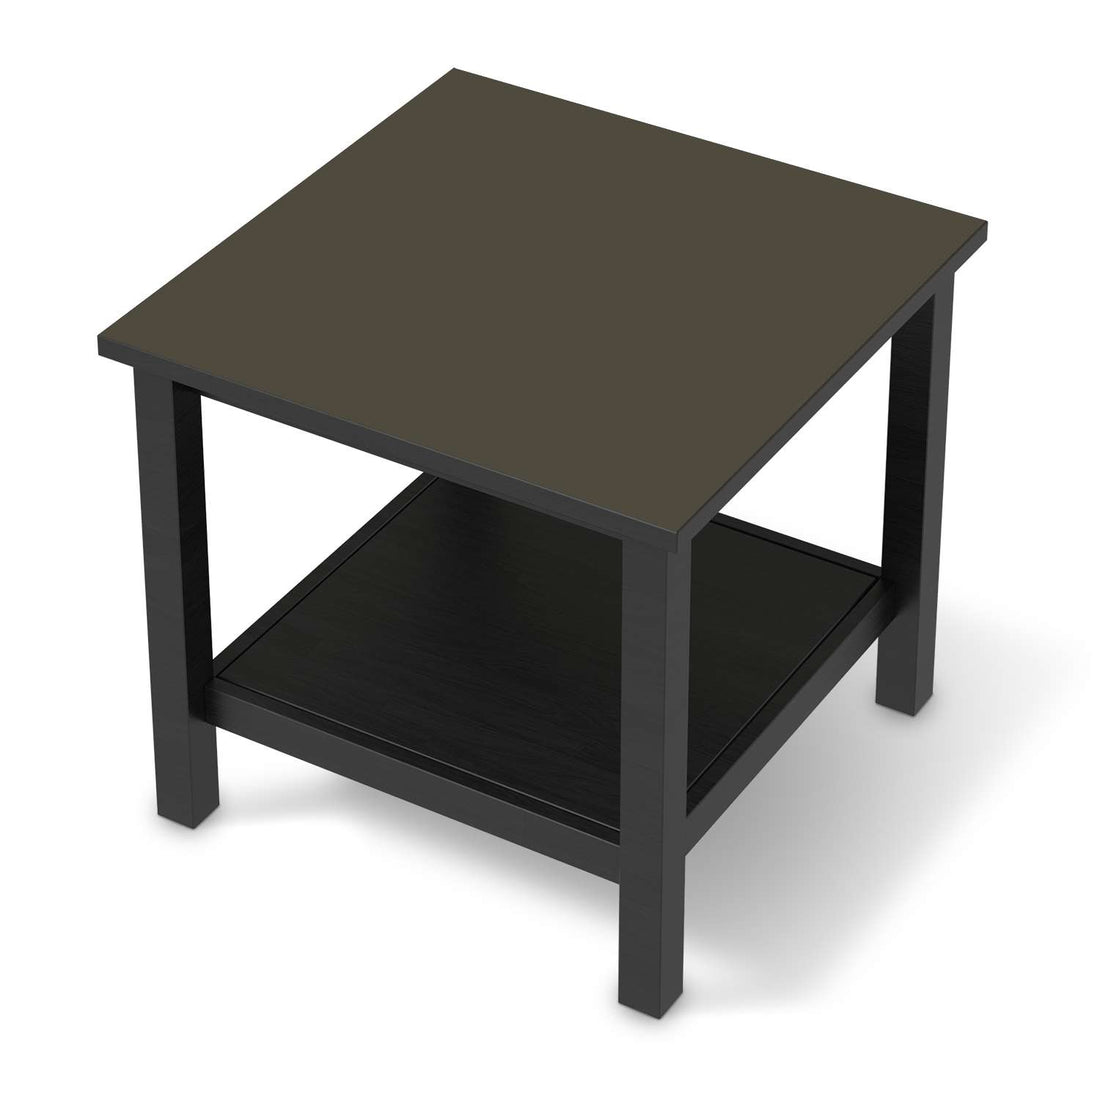 Möbel Klebefolie Braungrau Dark - IKEA Hemnes Beistelltisch 55x55 cm - schwarz